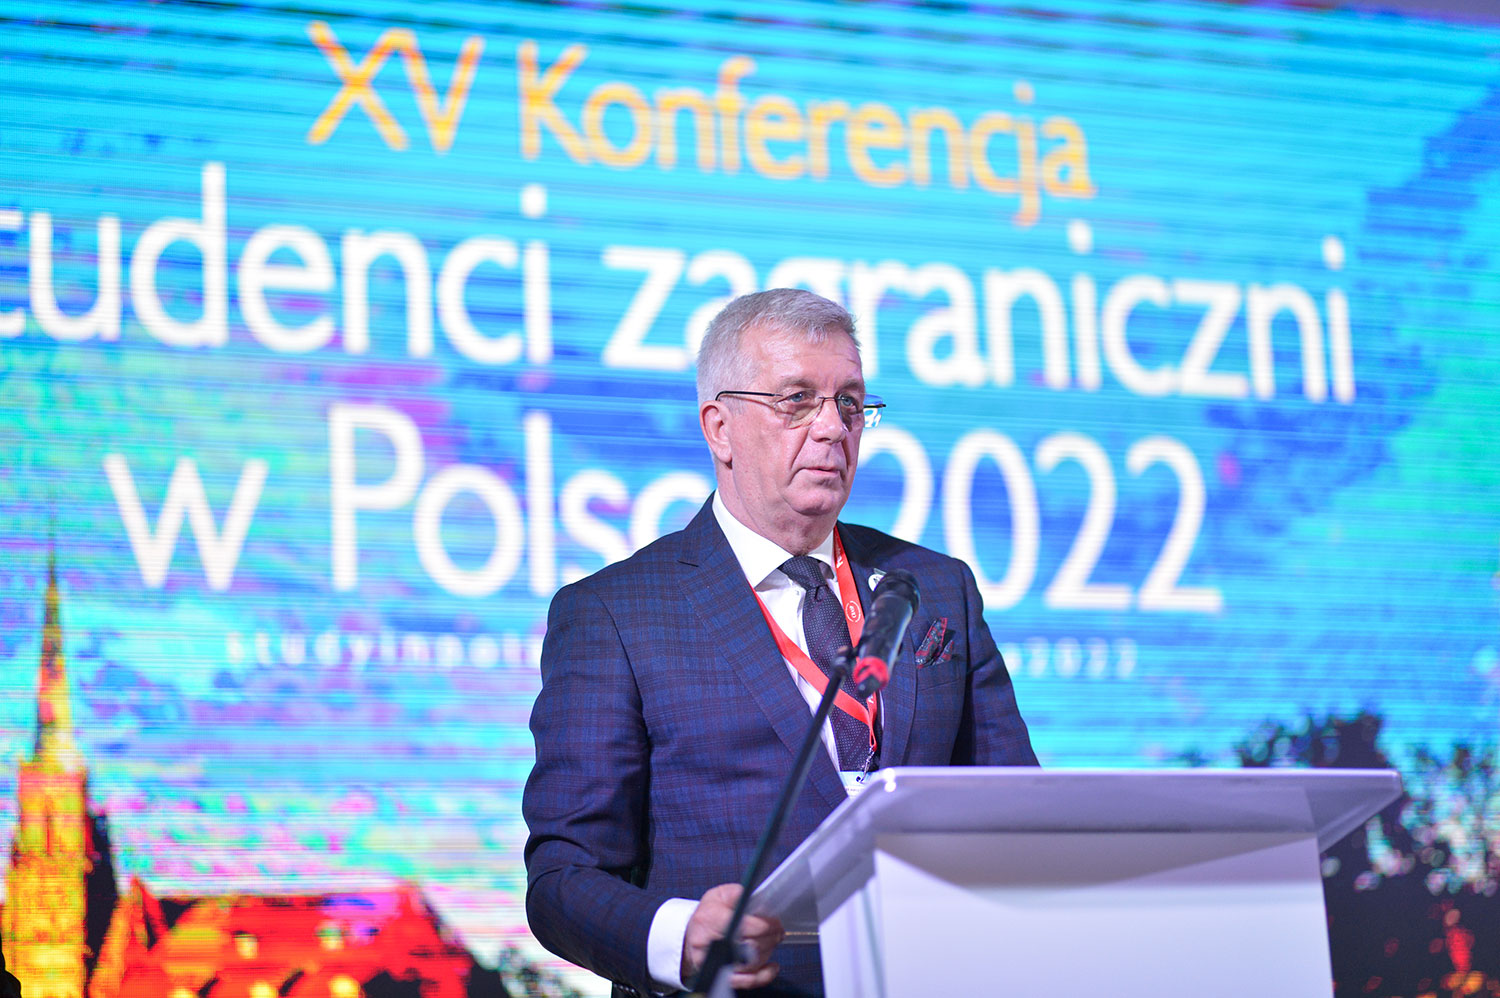 Uniwersytet Przyrodniczy we Wrocławiu i jego rektor prof. Jarosław Bosy byli współgospodarzami konferencji